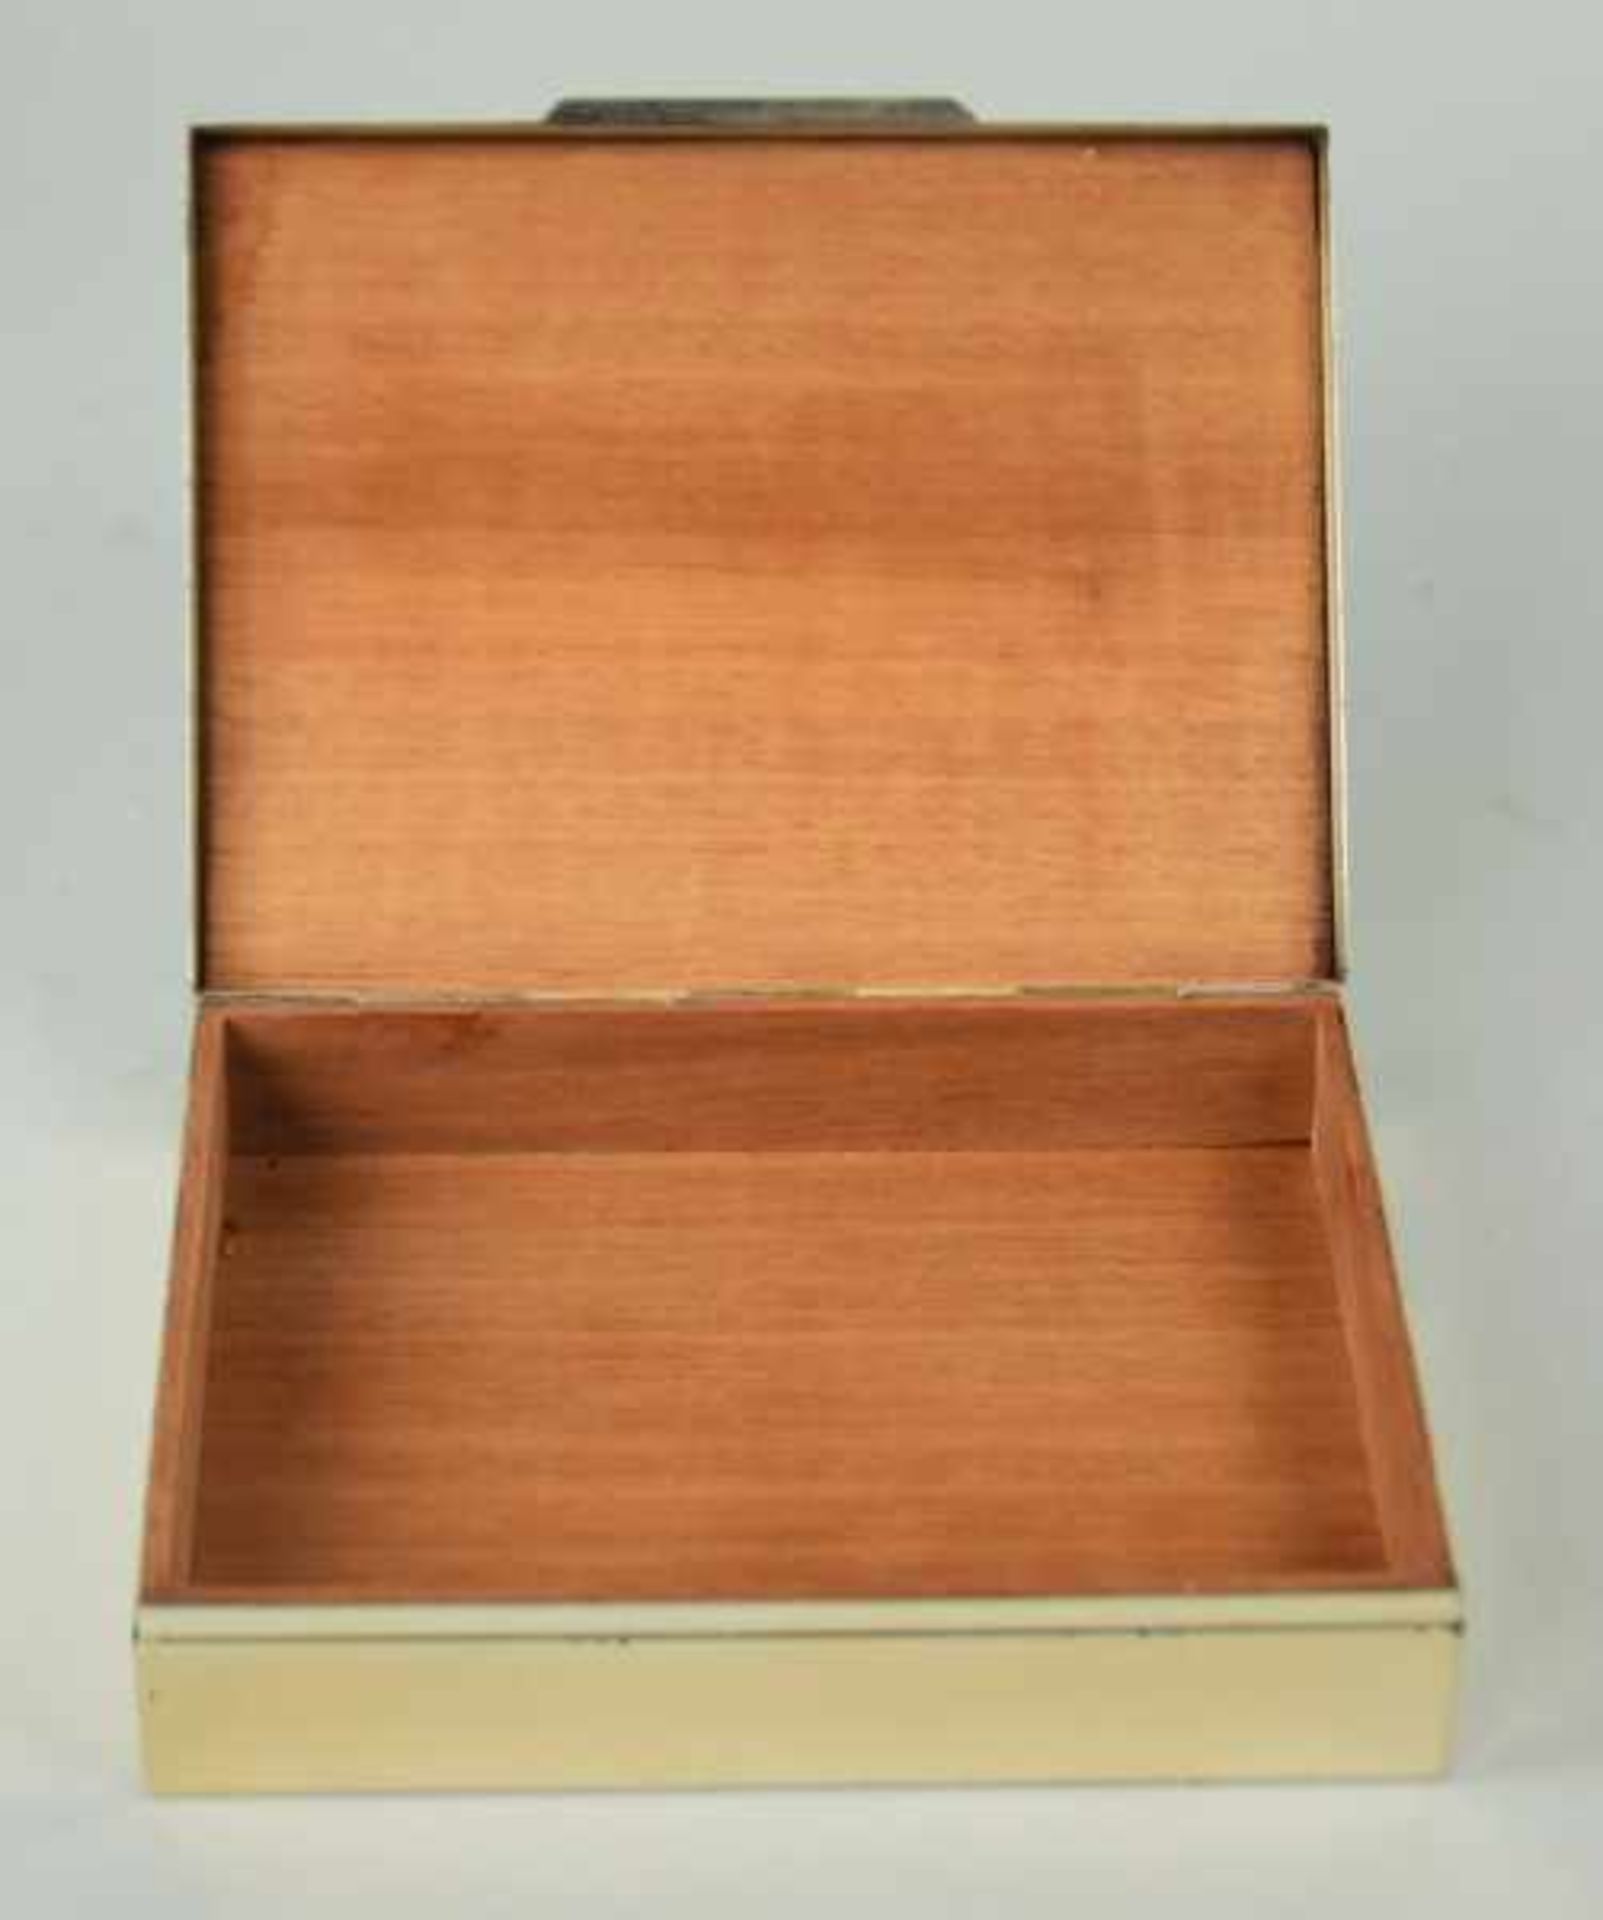 SCHATULLE rechteckig, Innenauskleidung aus Sandelholz, Silber 835, Wilhelm Binder, 295gr, 3x13x10cm - Bild 2 aus 2